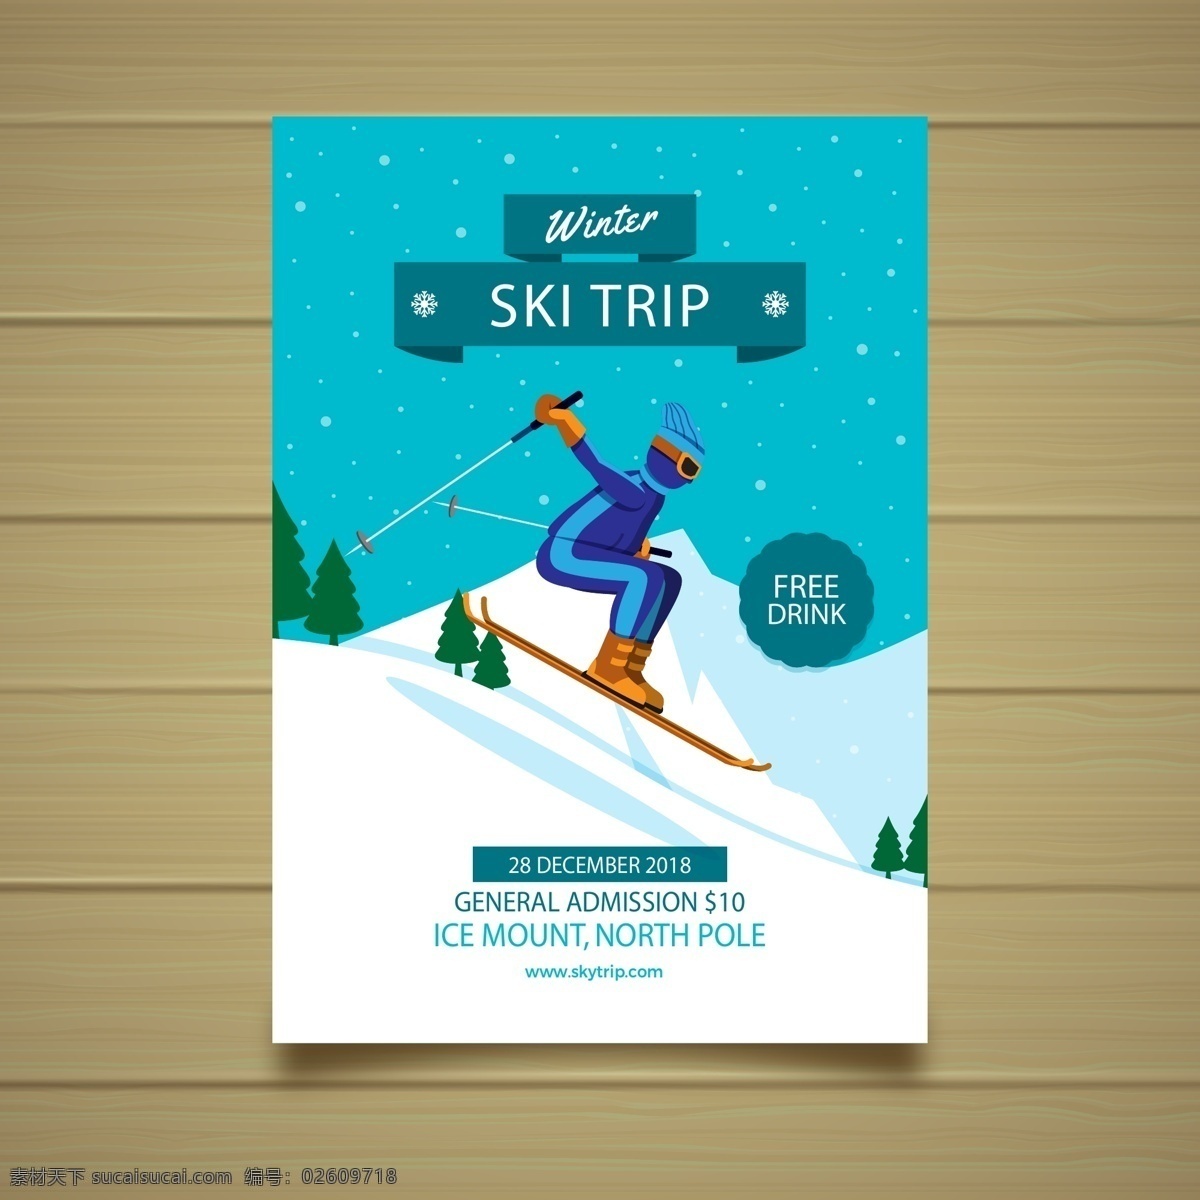 滑雪 滑雪板 滑水橇 滑行装置 下雪背景 滑雪人物 滑雪运动员 国外滑雪海报 外国滑雪海报 雪山矢量 卡通树木 卡通雪山 滑雪单张设计 海报折页